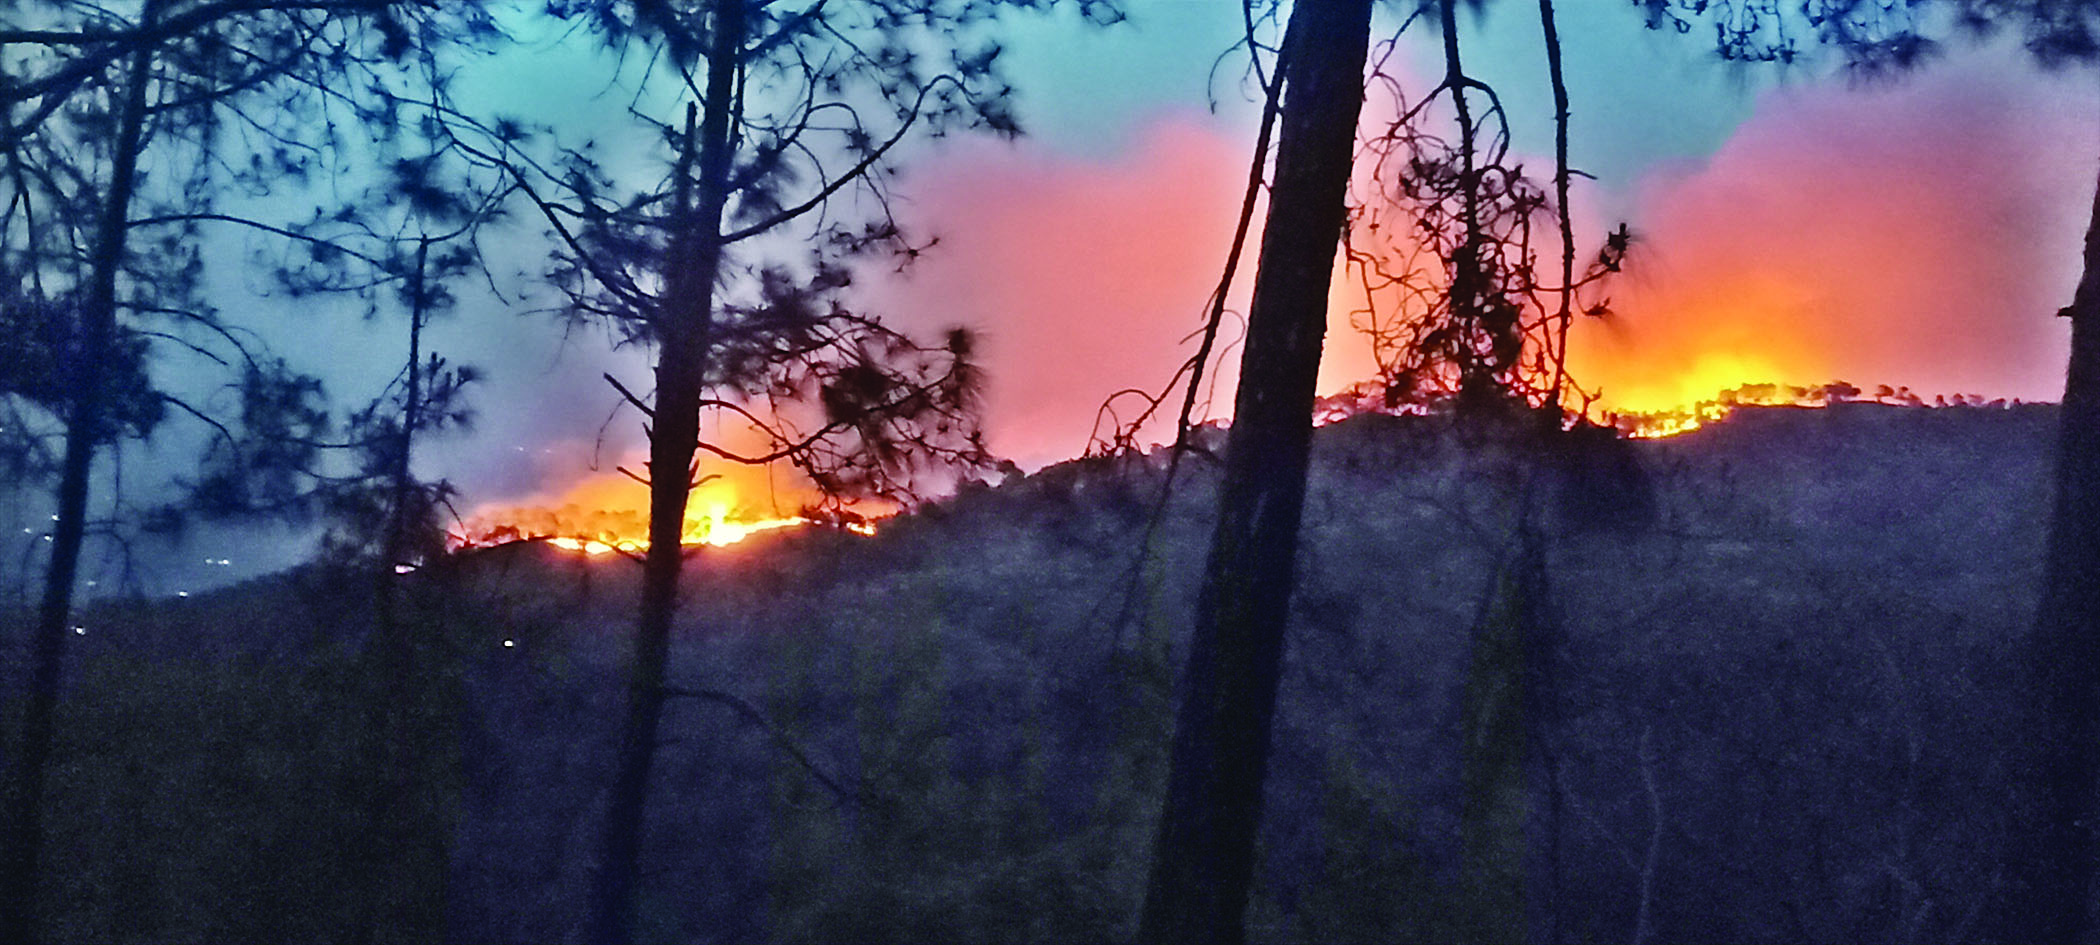 सैनधार में धू-धूकर जल रही वन संपदा